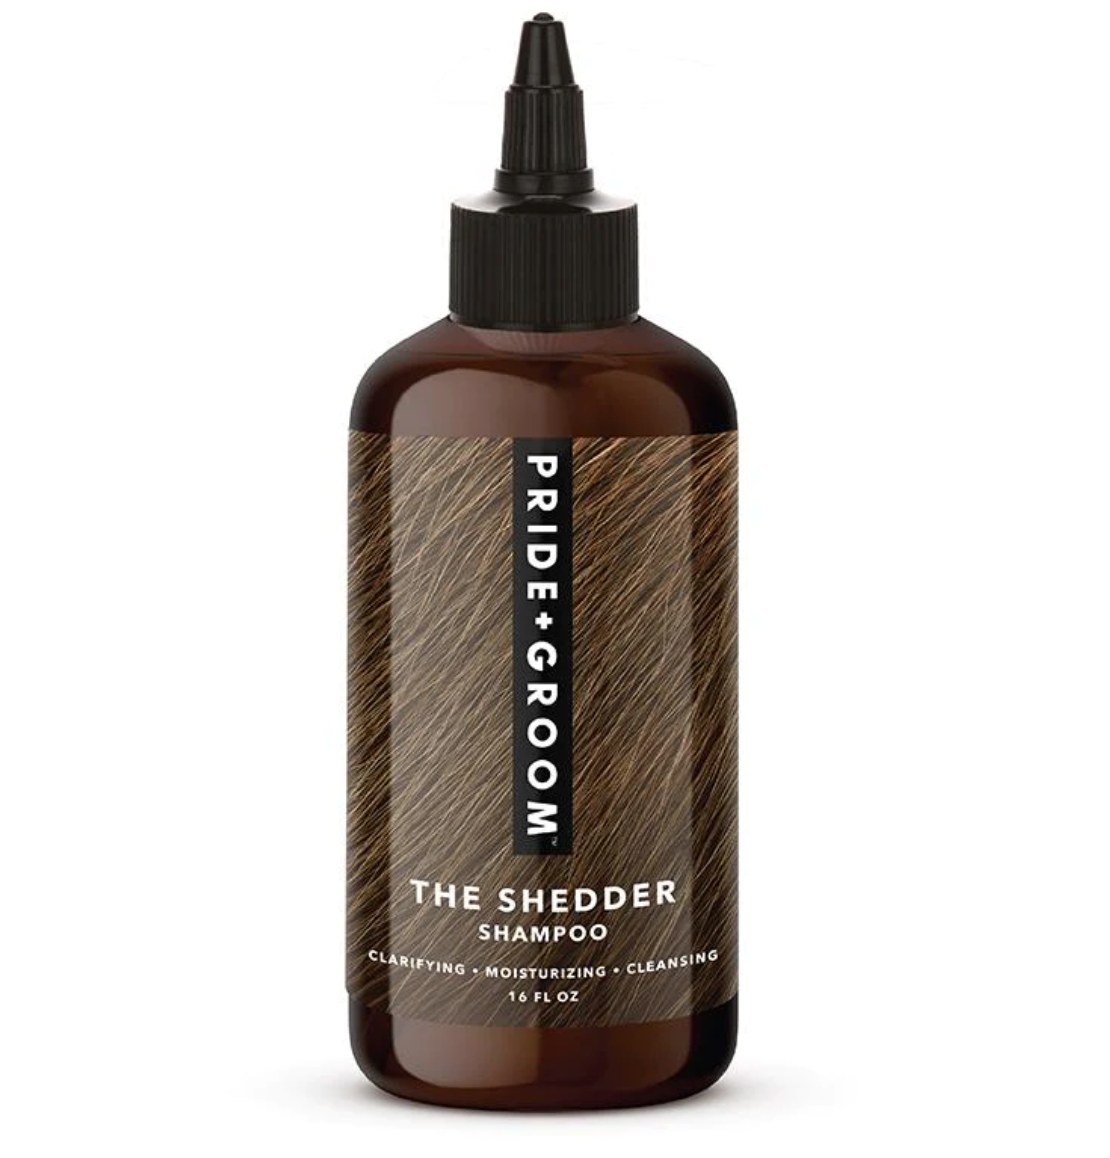 Pride + Groom Dog Shampoo, "The Shedder"